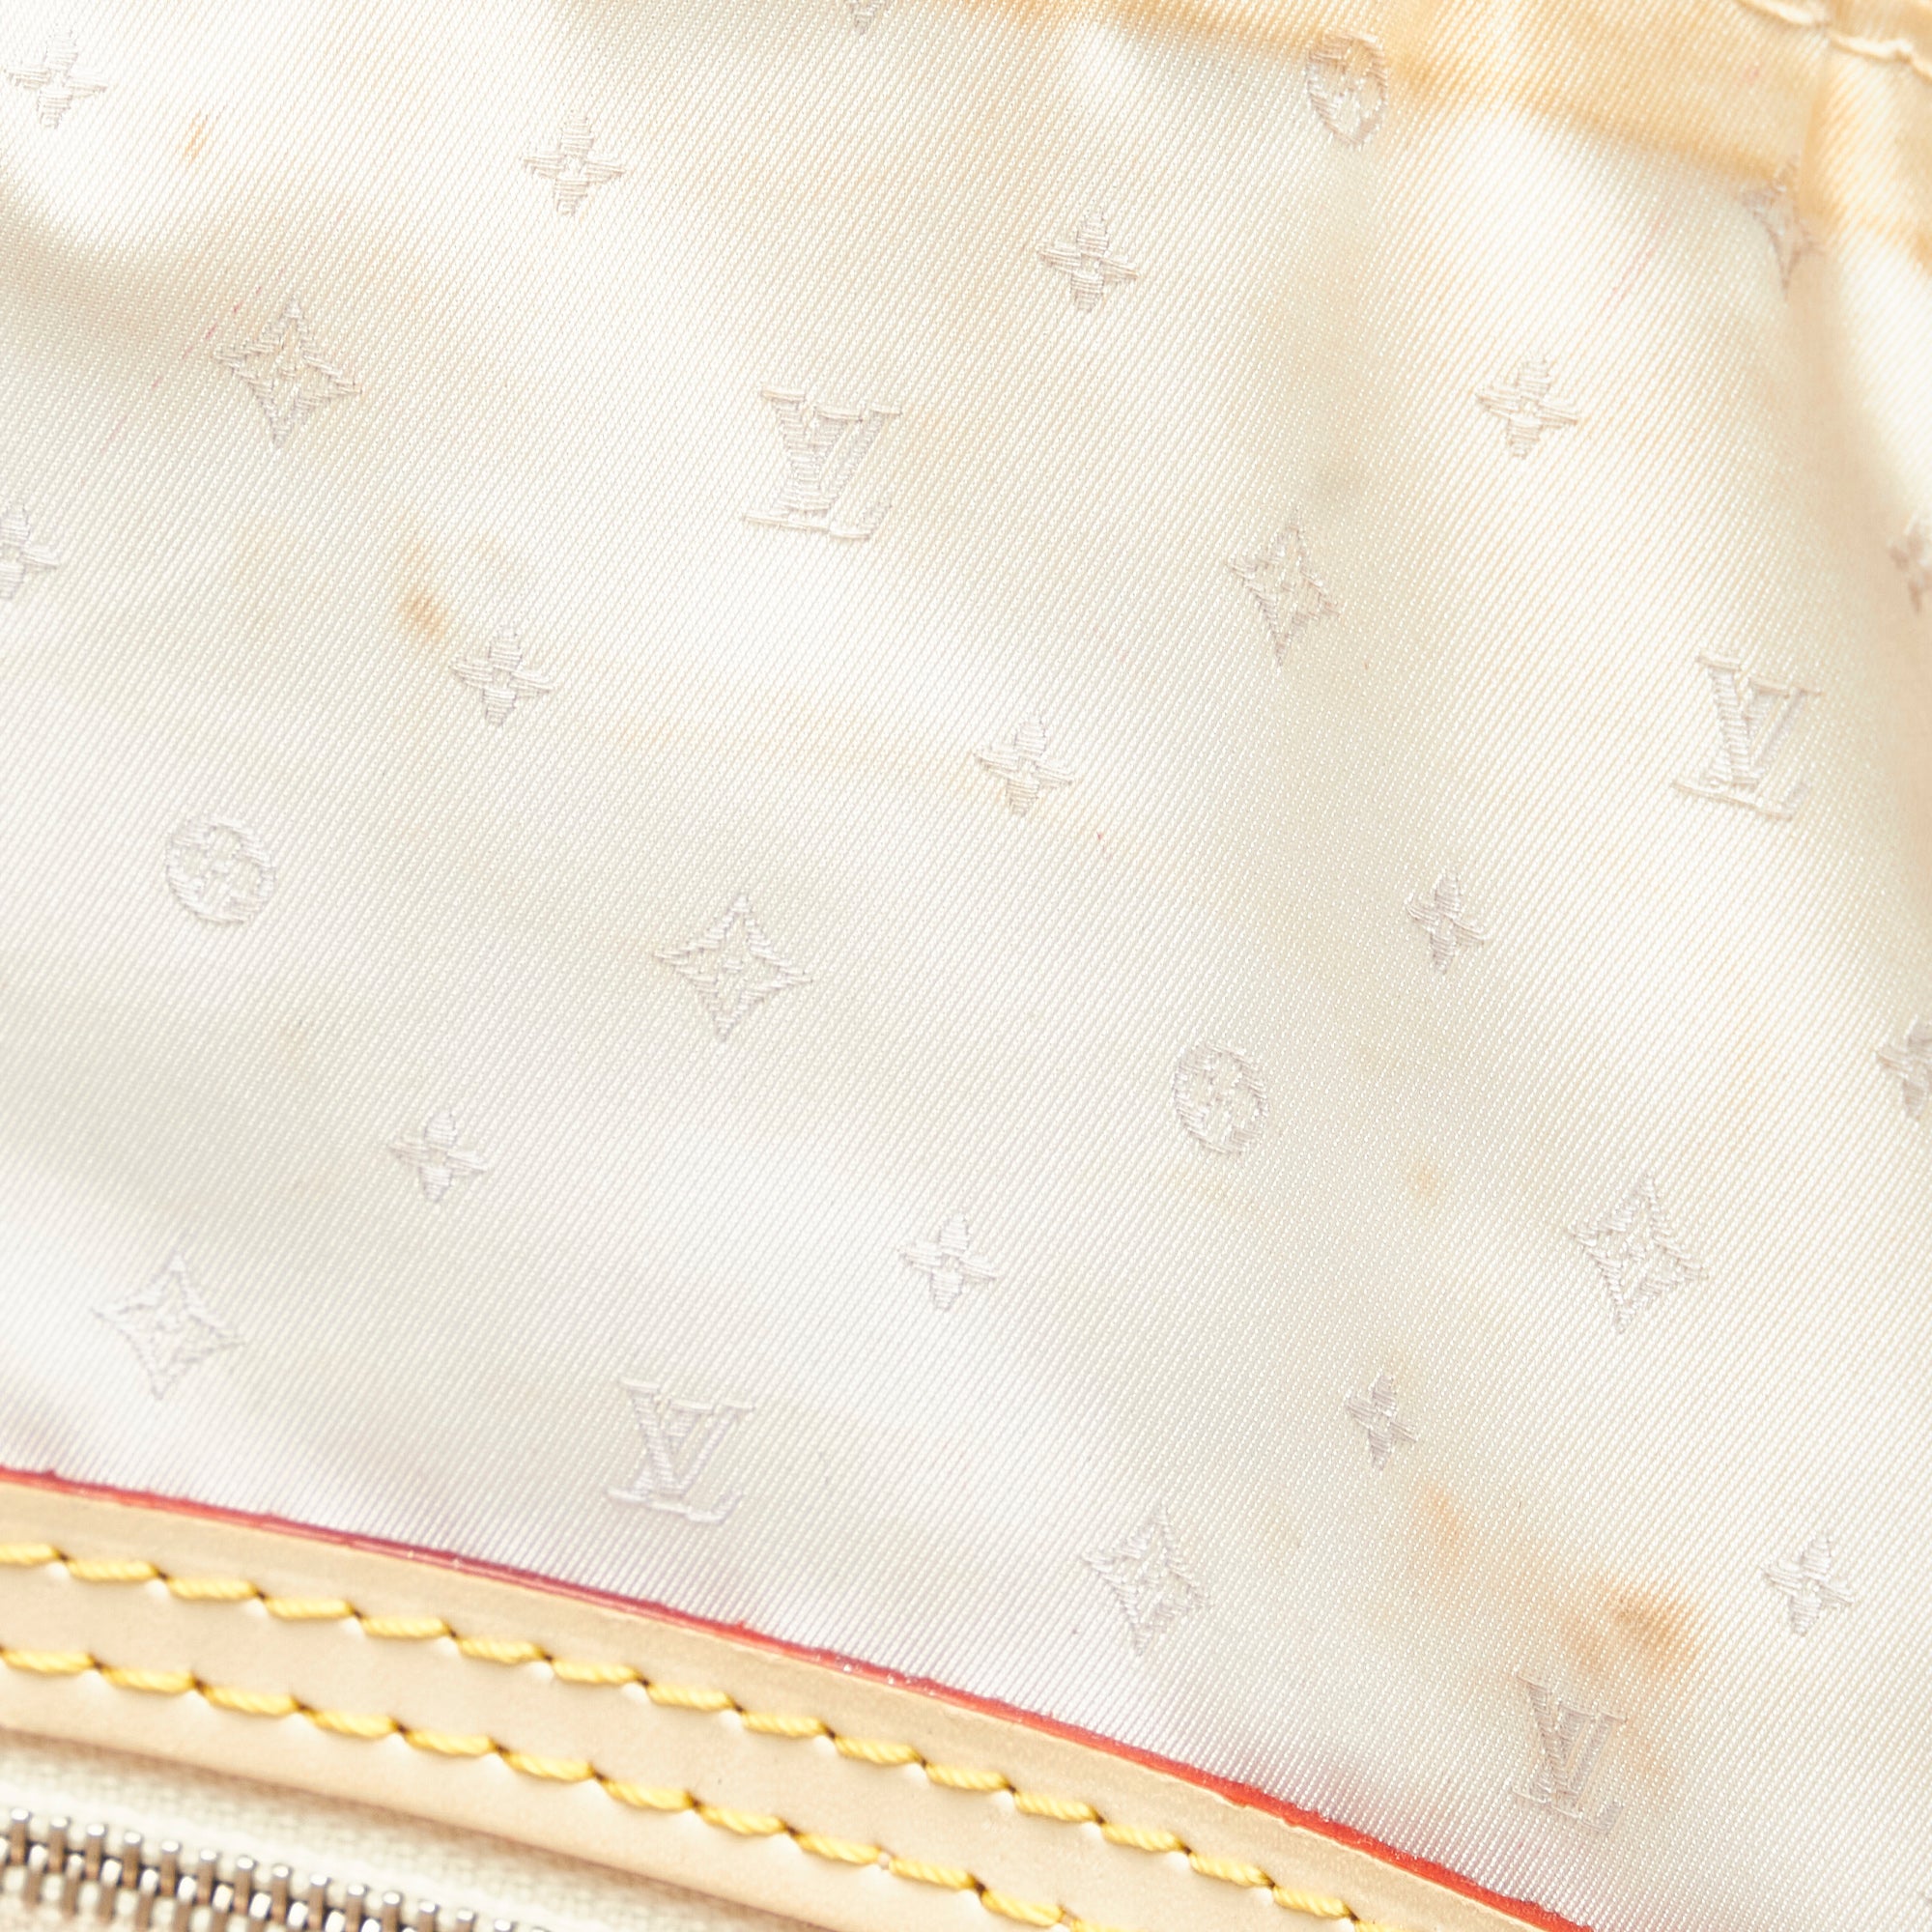 Preloved Louis Vuitton Beige Suhali Lockit MM Shoulder Bag DU1067